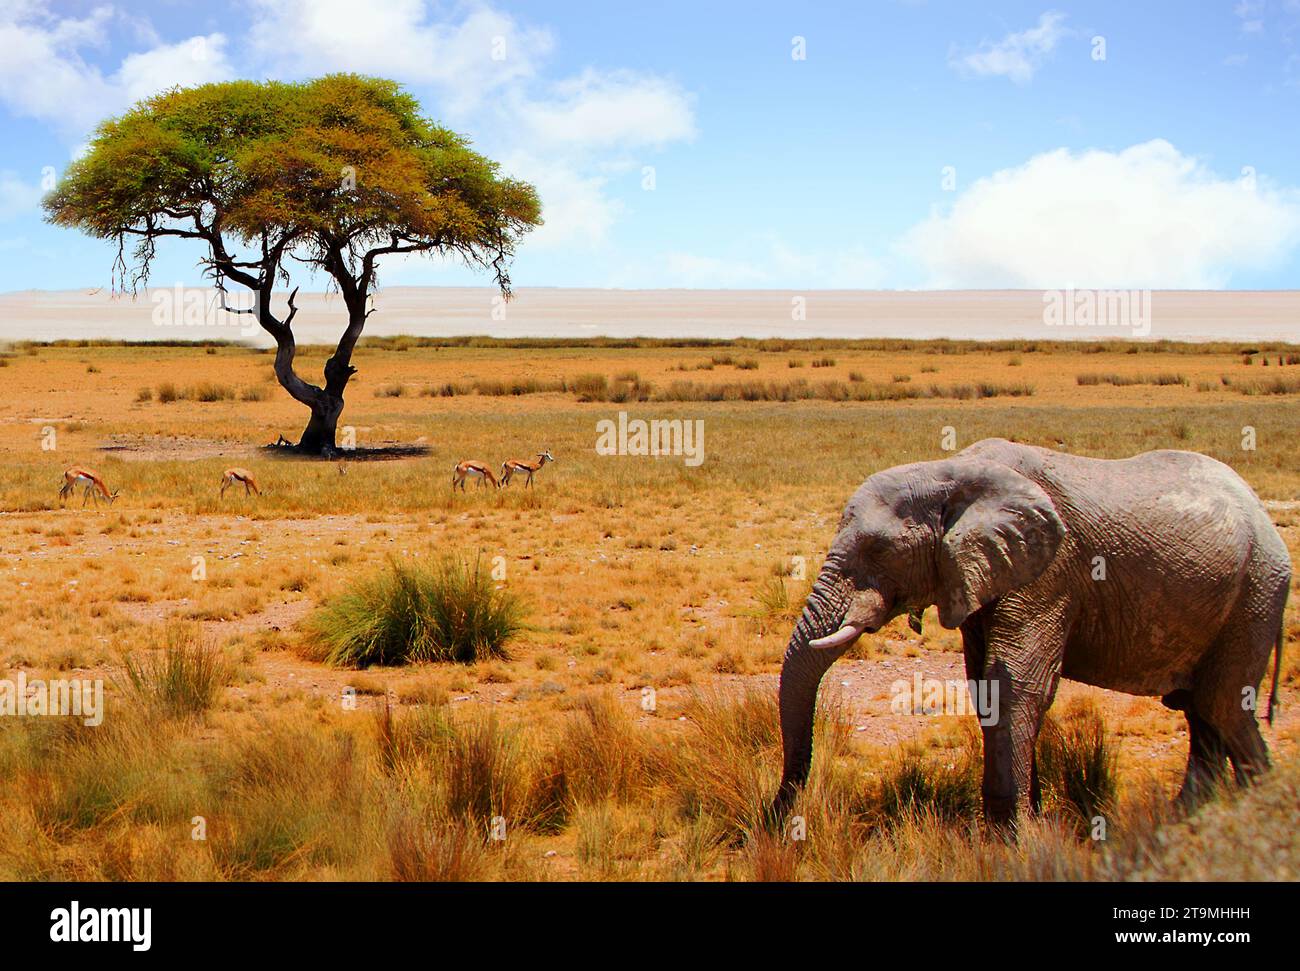 Belle scène hors de l'Afrique avec un éléphant solitaire et un arbre d'acacia avec une toile de fond de l'Etosha Pan. Banque D'Images